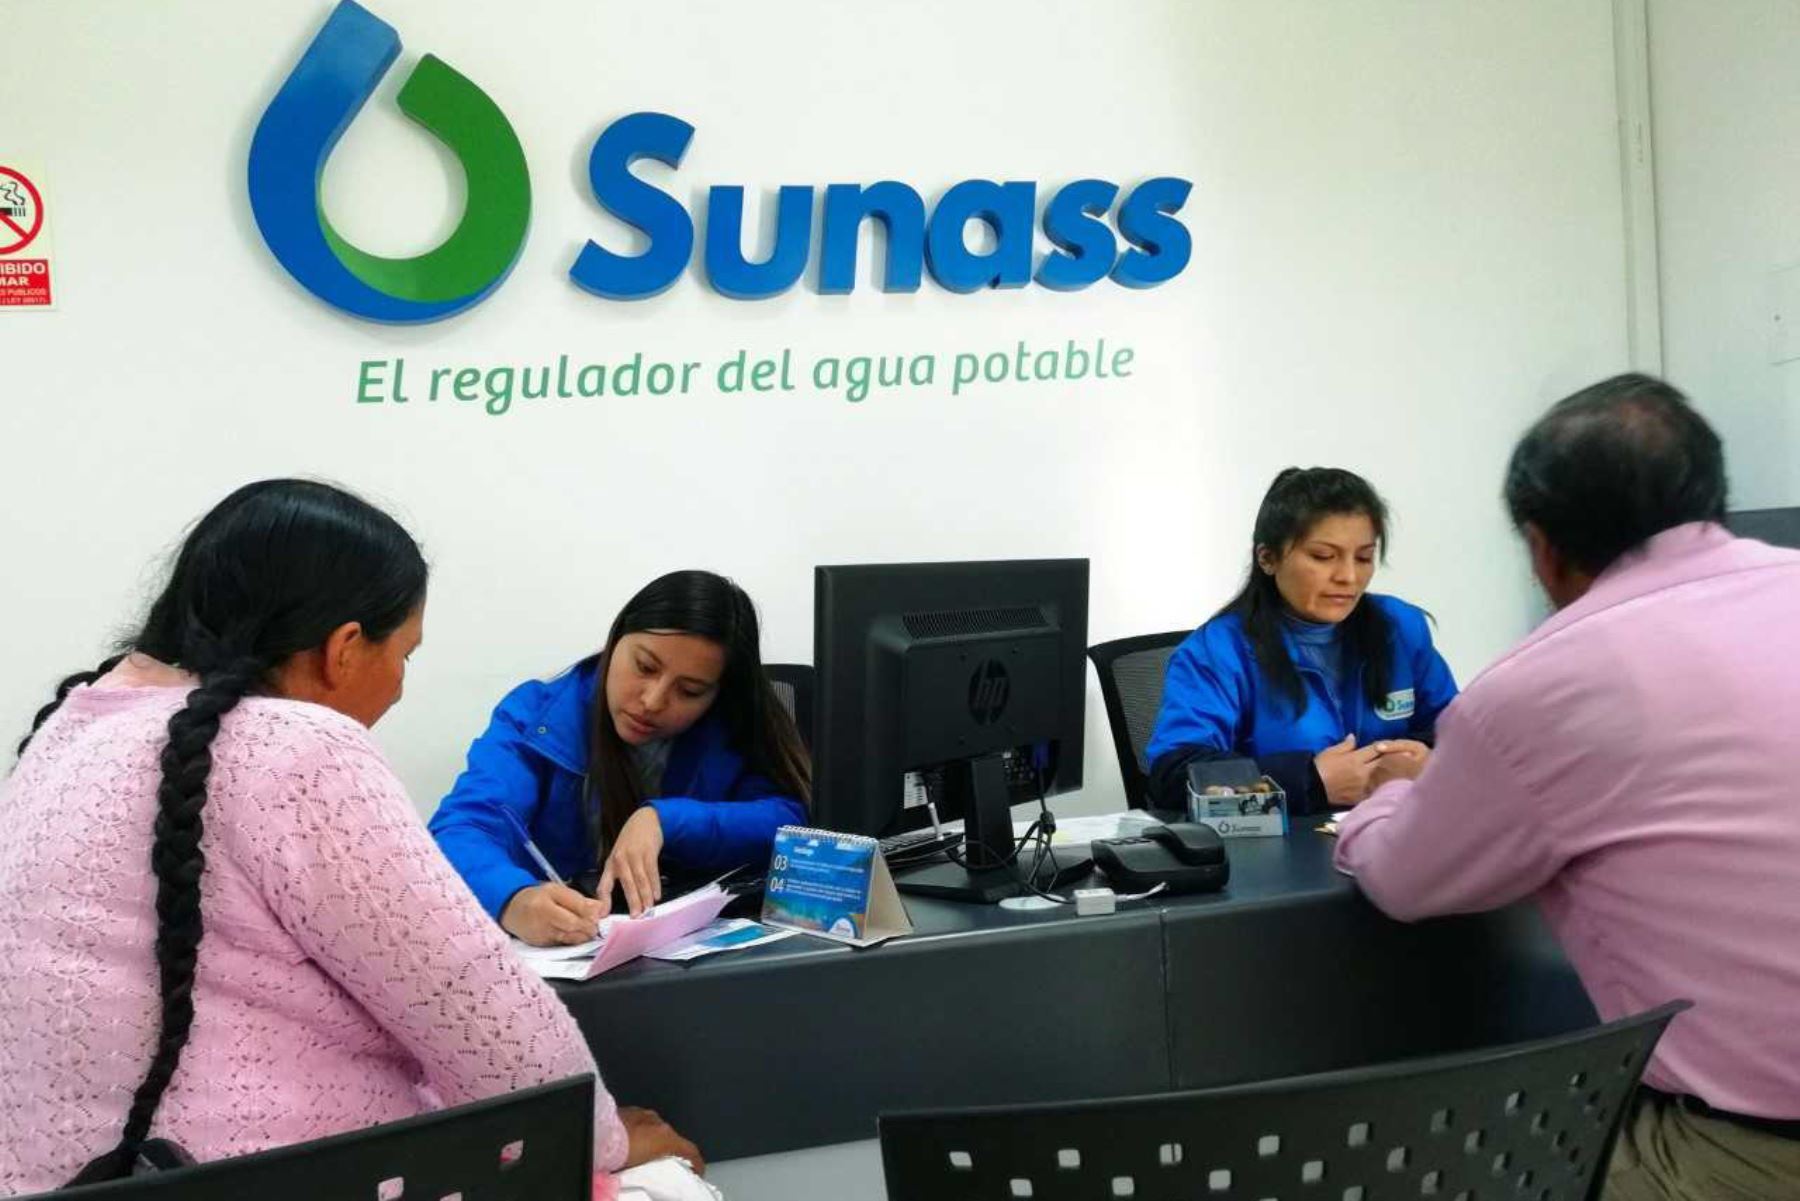 La Superintendencia Nacional de Servicios de Saneamiento (Sunass), a través de su oficina desconcentrada en Ayacucho, viene desarrollando acciones de orientación a los usuarios del servicio de agua potable y alcantarillado.